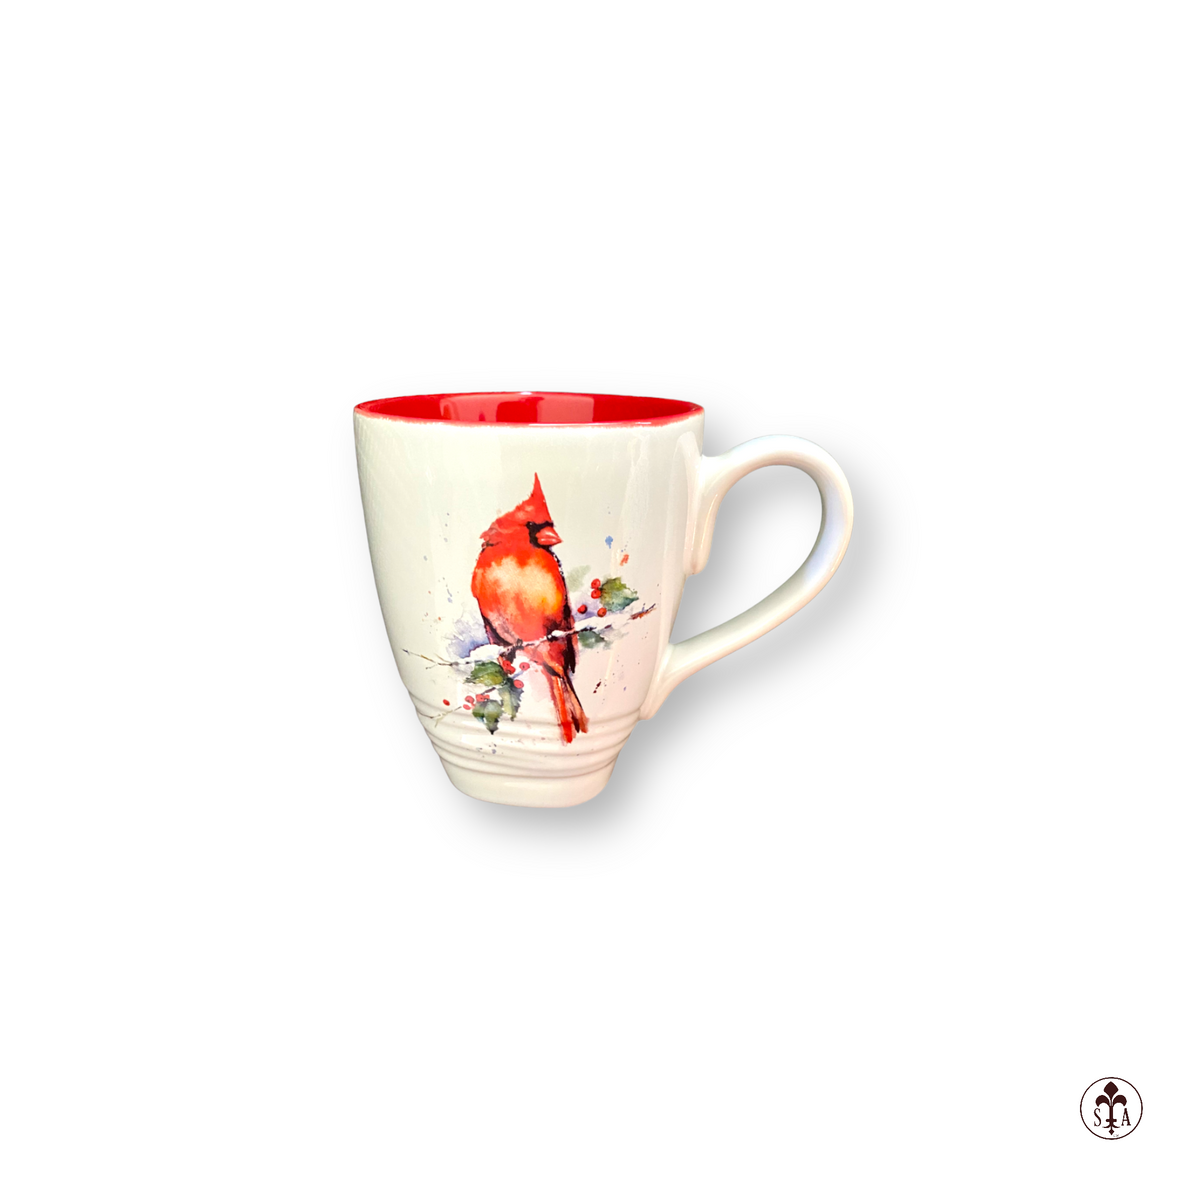 Cardinal Mug